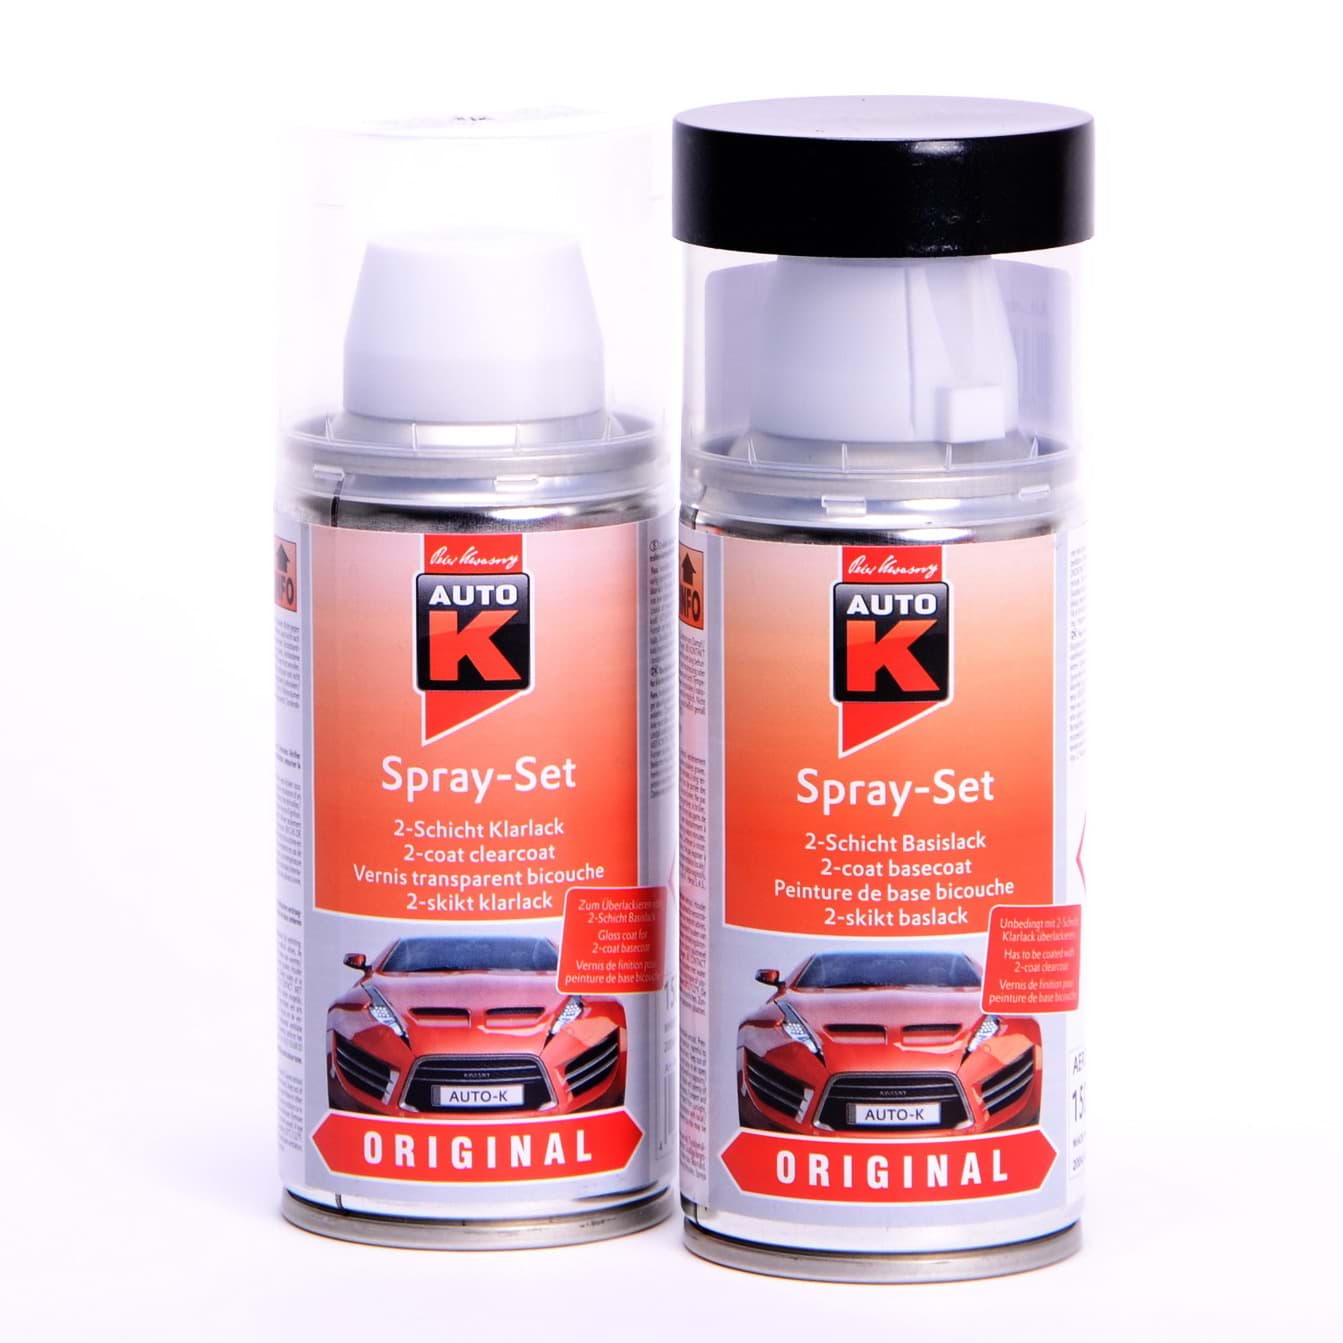 Изображение Auto-K Spray-Set Autolack für Mercedes 792 Palladiumsilber met 23345